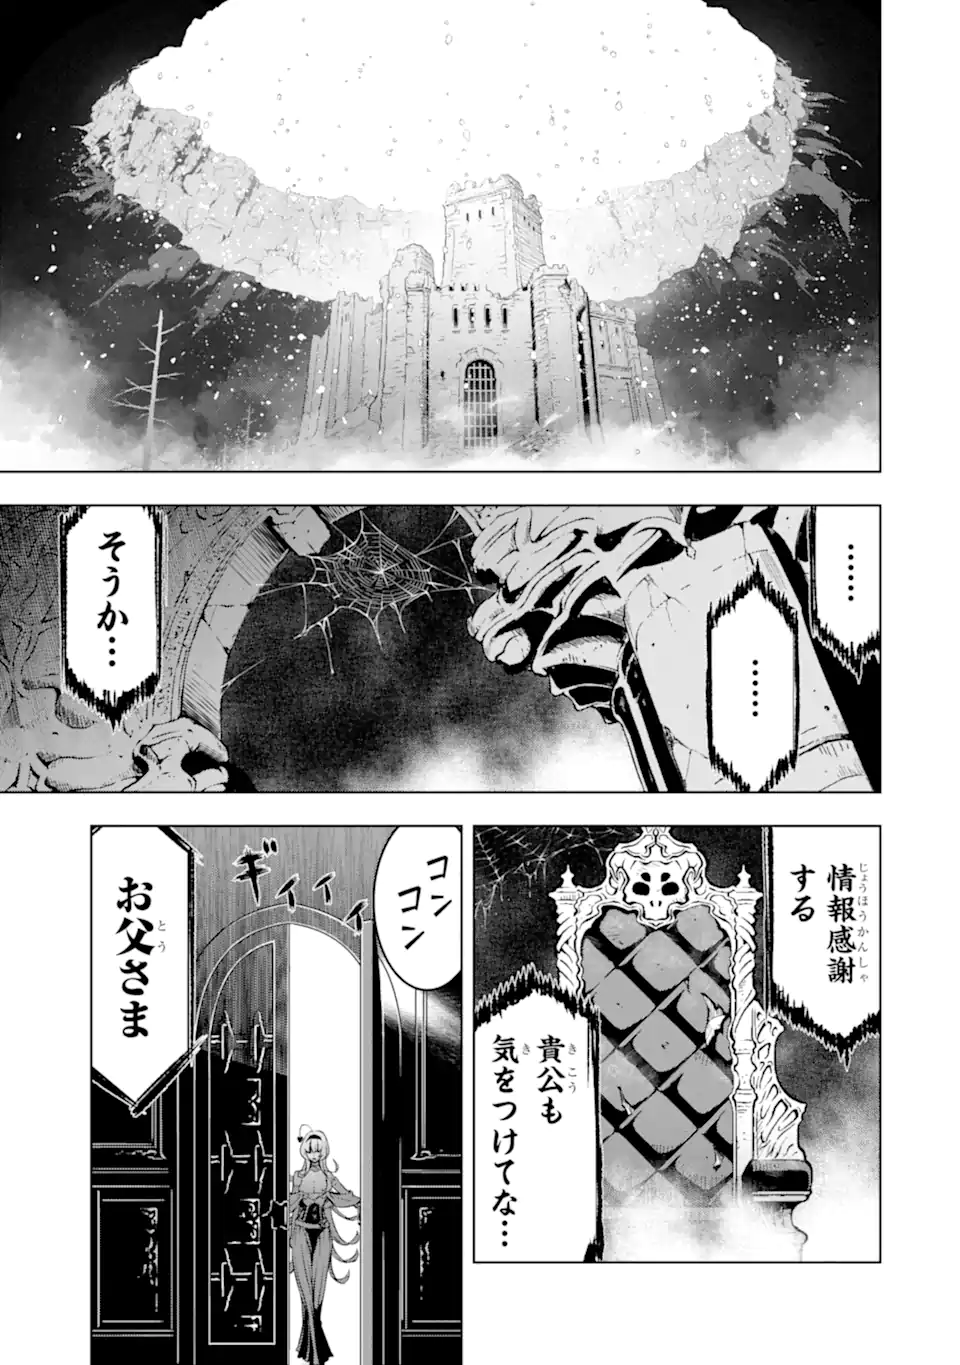 Koko wa Ore ni Makasete Saki ni Ike to Itte kara 10 Nen ga Tattara Densetsu ni Natteita - Chapter 37.3 - Page 1